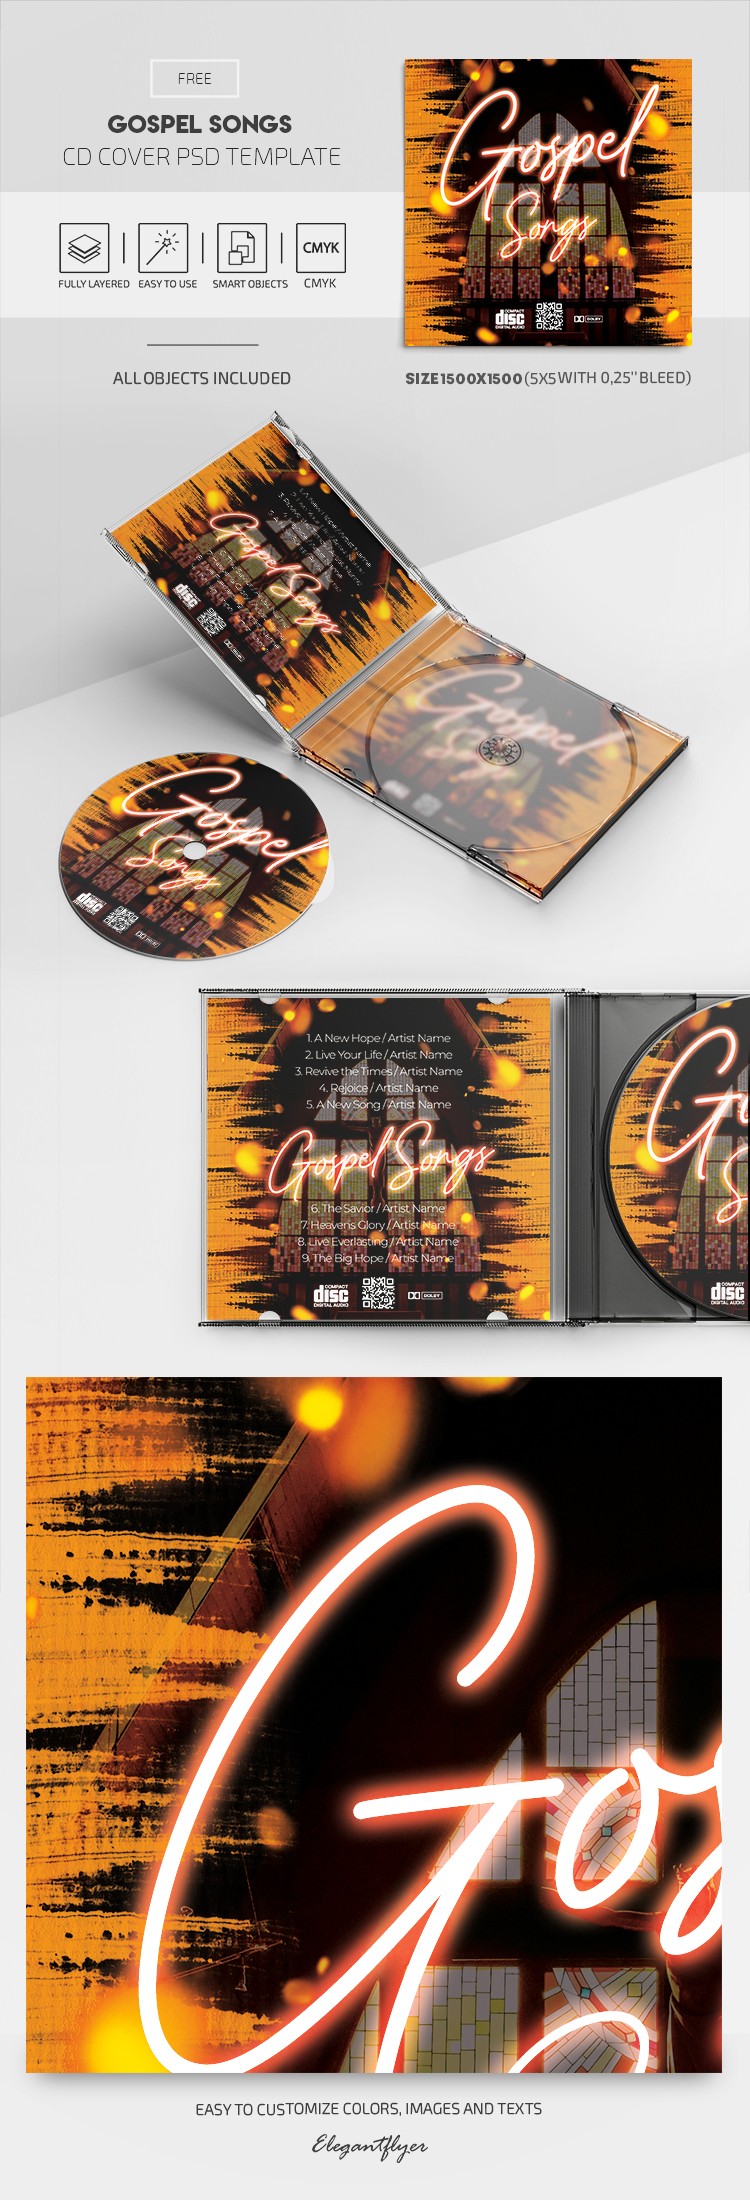 Couverture du CD de chants Gospel by ElegantFlyer